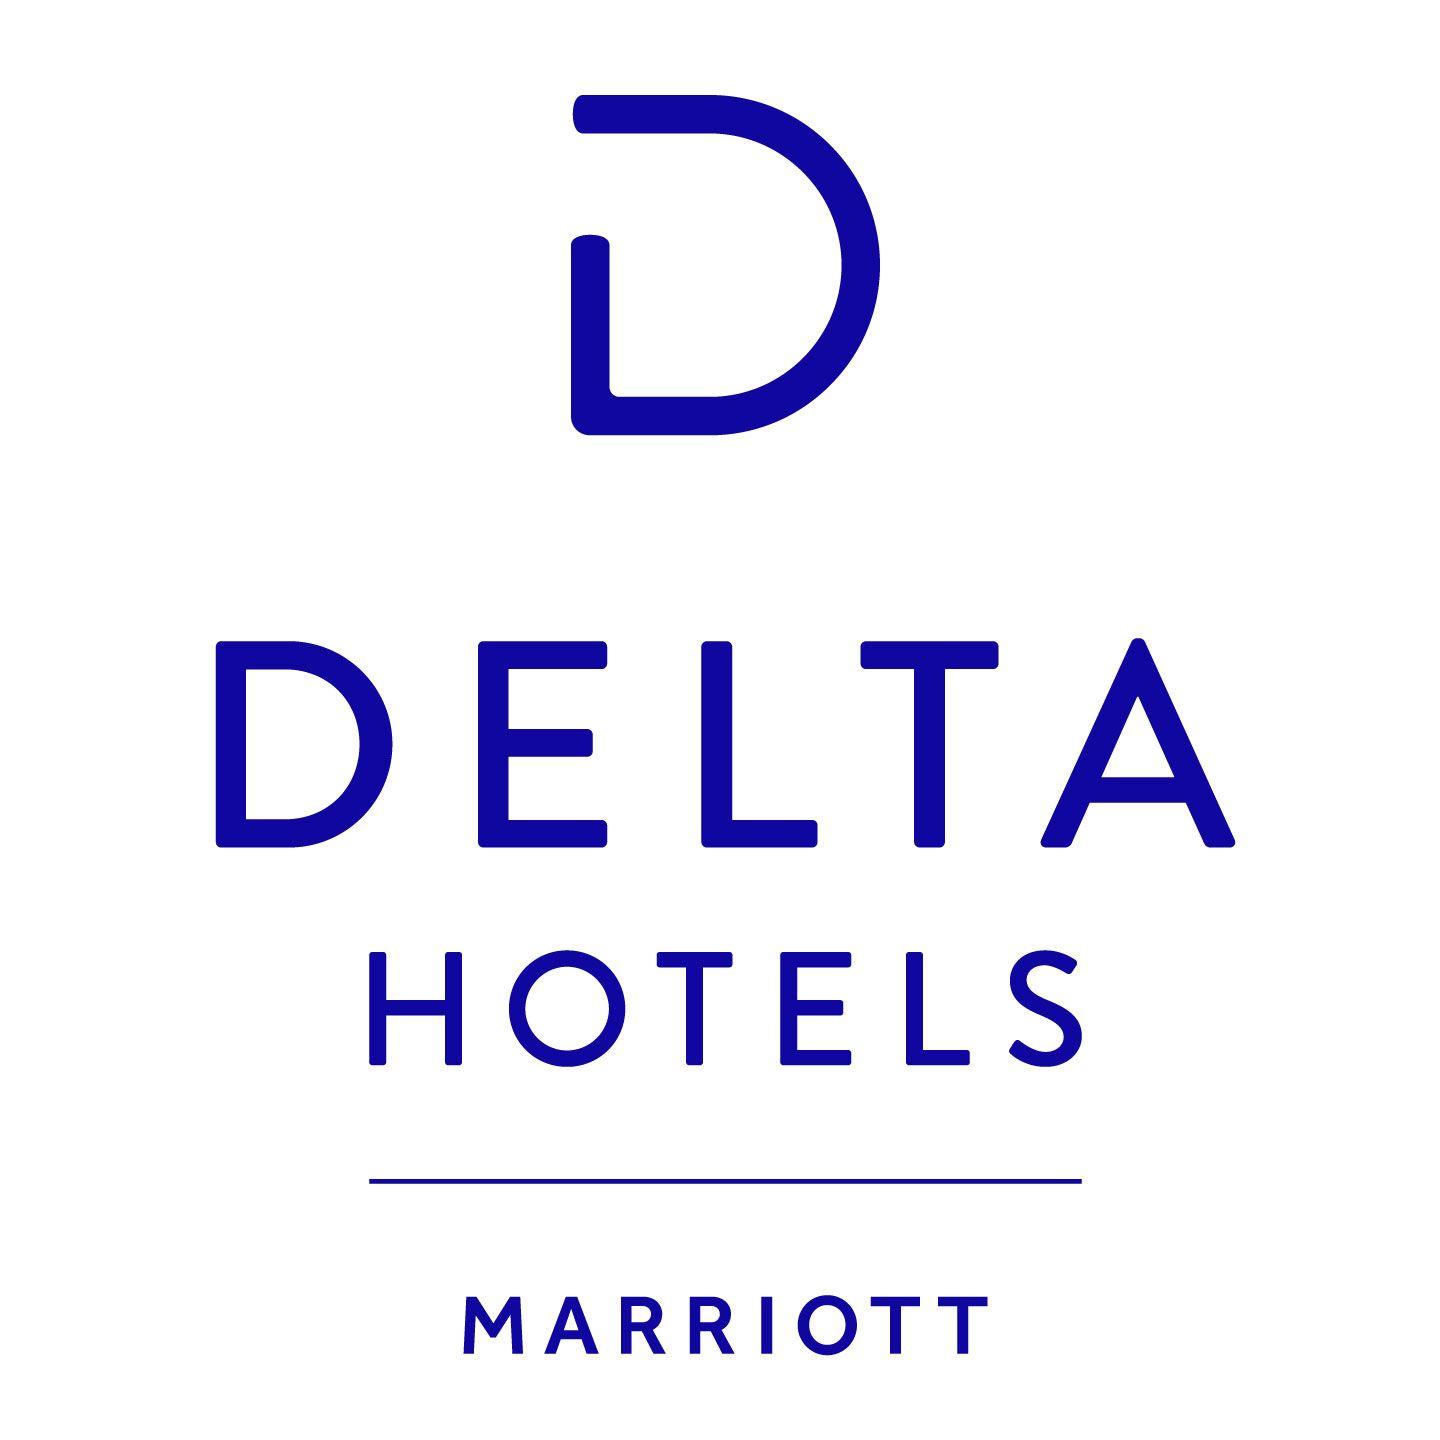 Residence Inn by Marriott Logo - Brand Photo & Logos. Marriott News Center